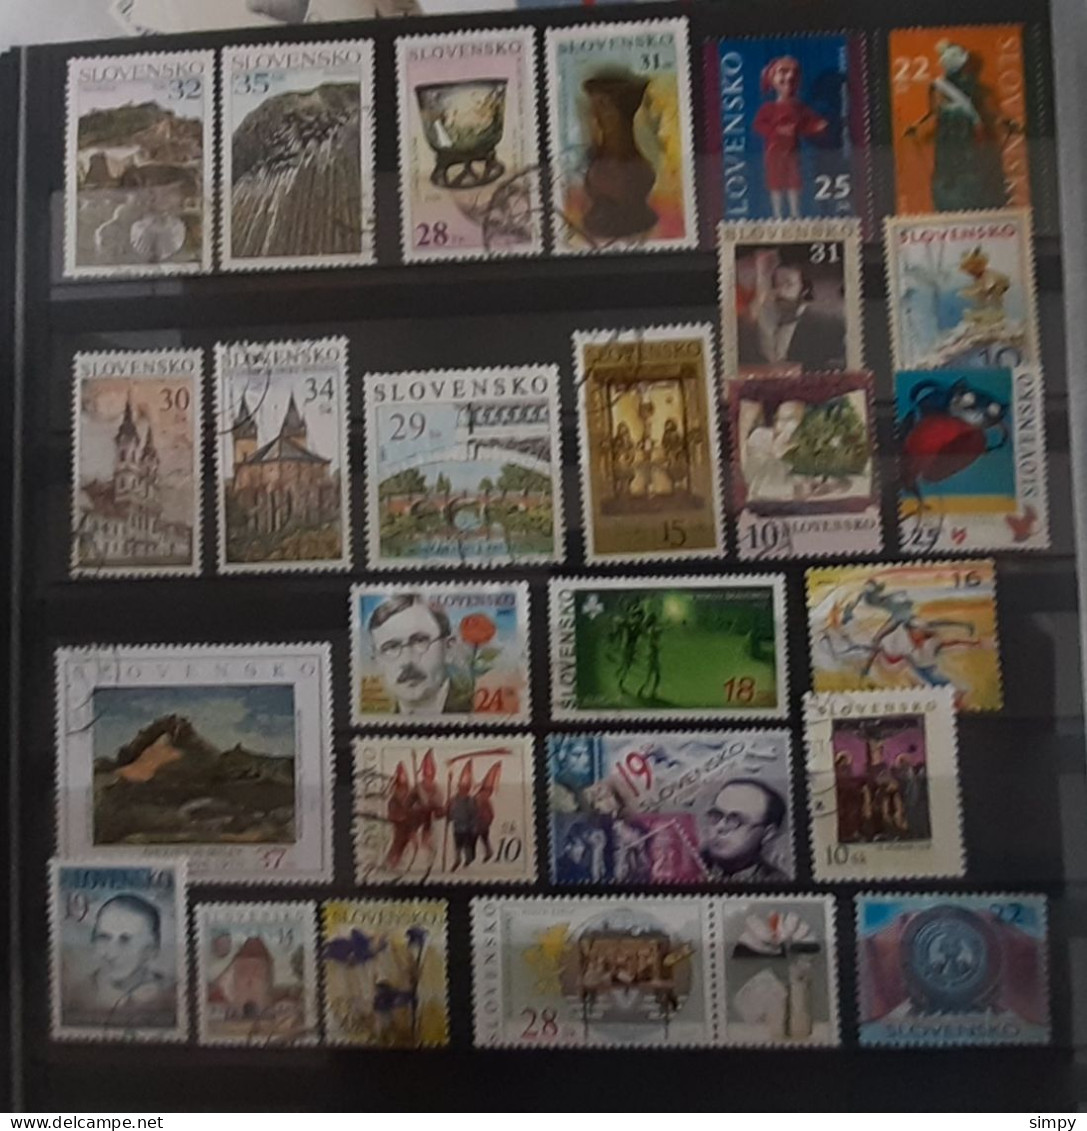 SLOVAKIA 2007 Lot Of Used Stamps - Usados